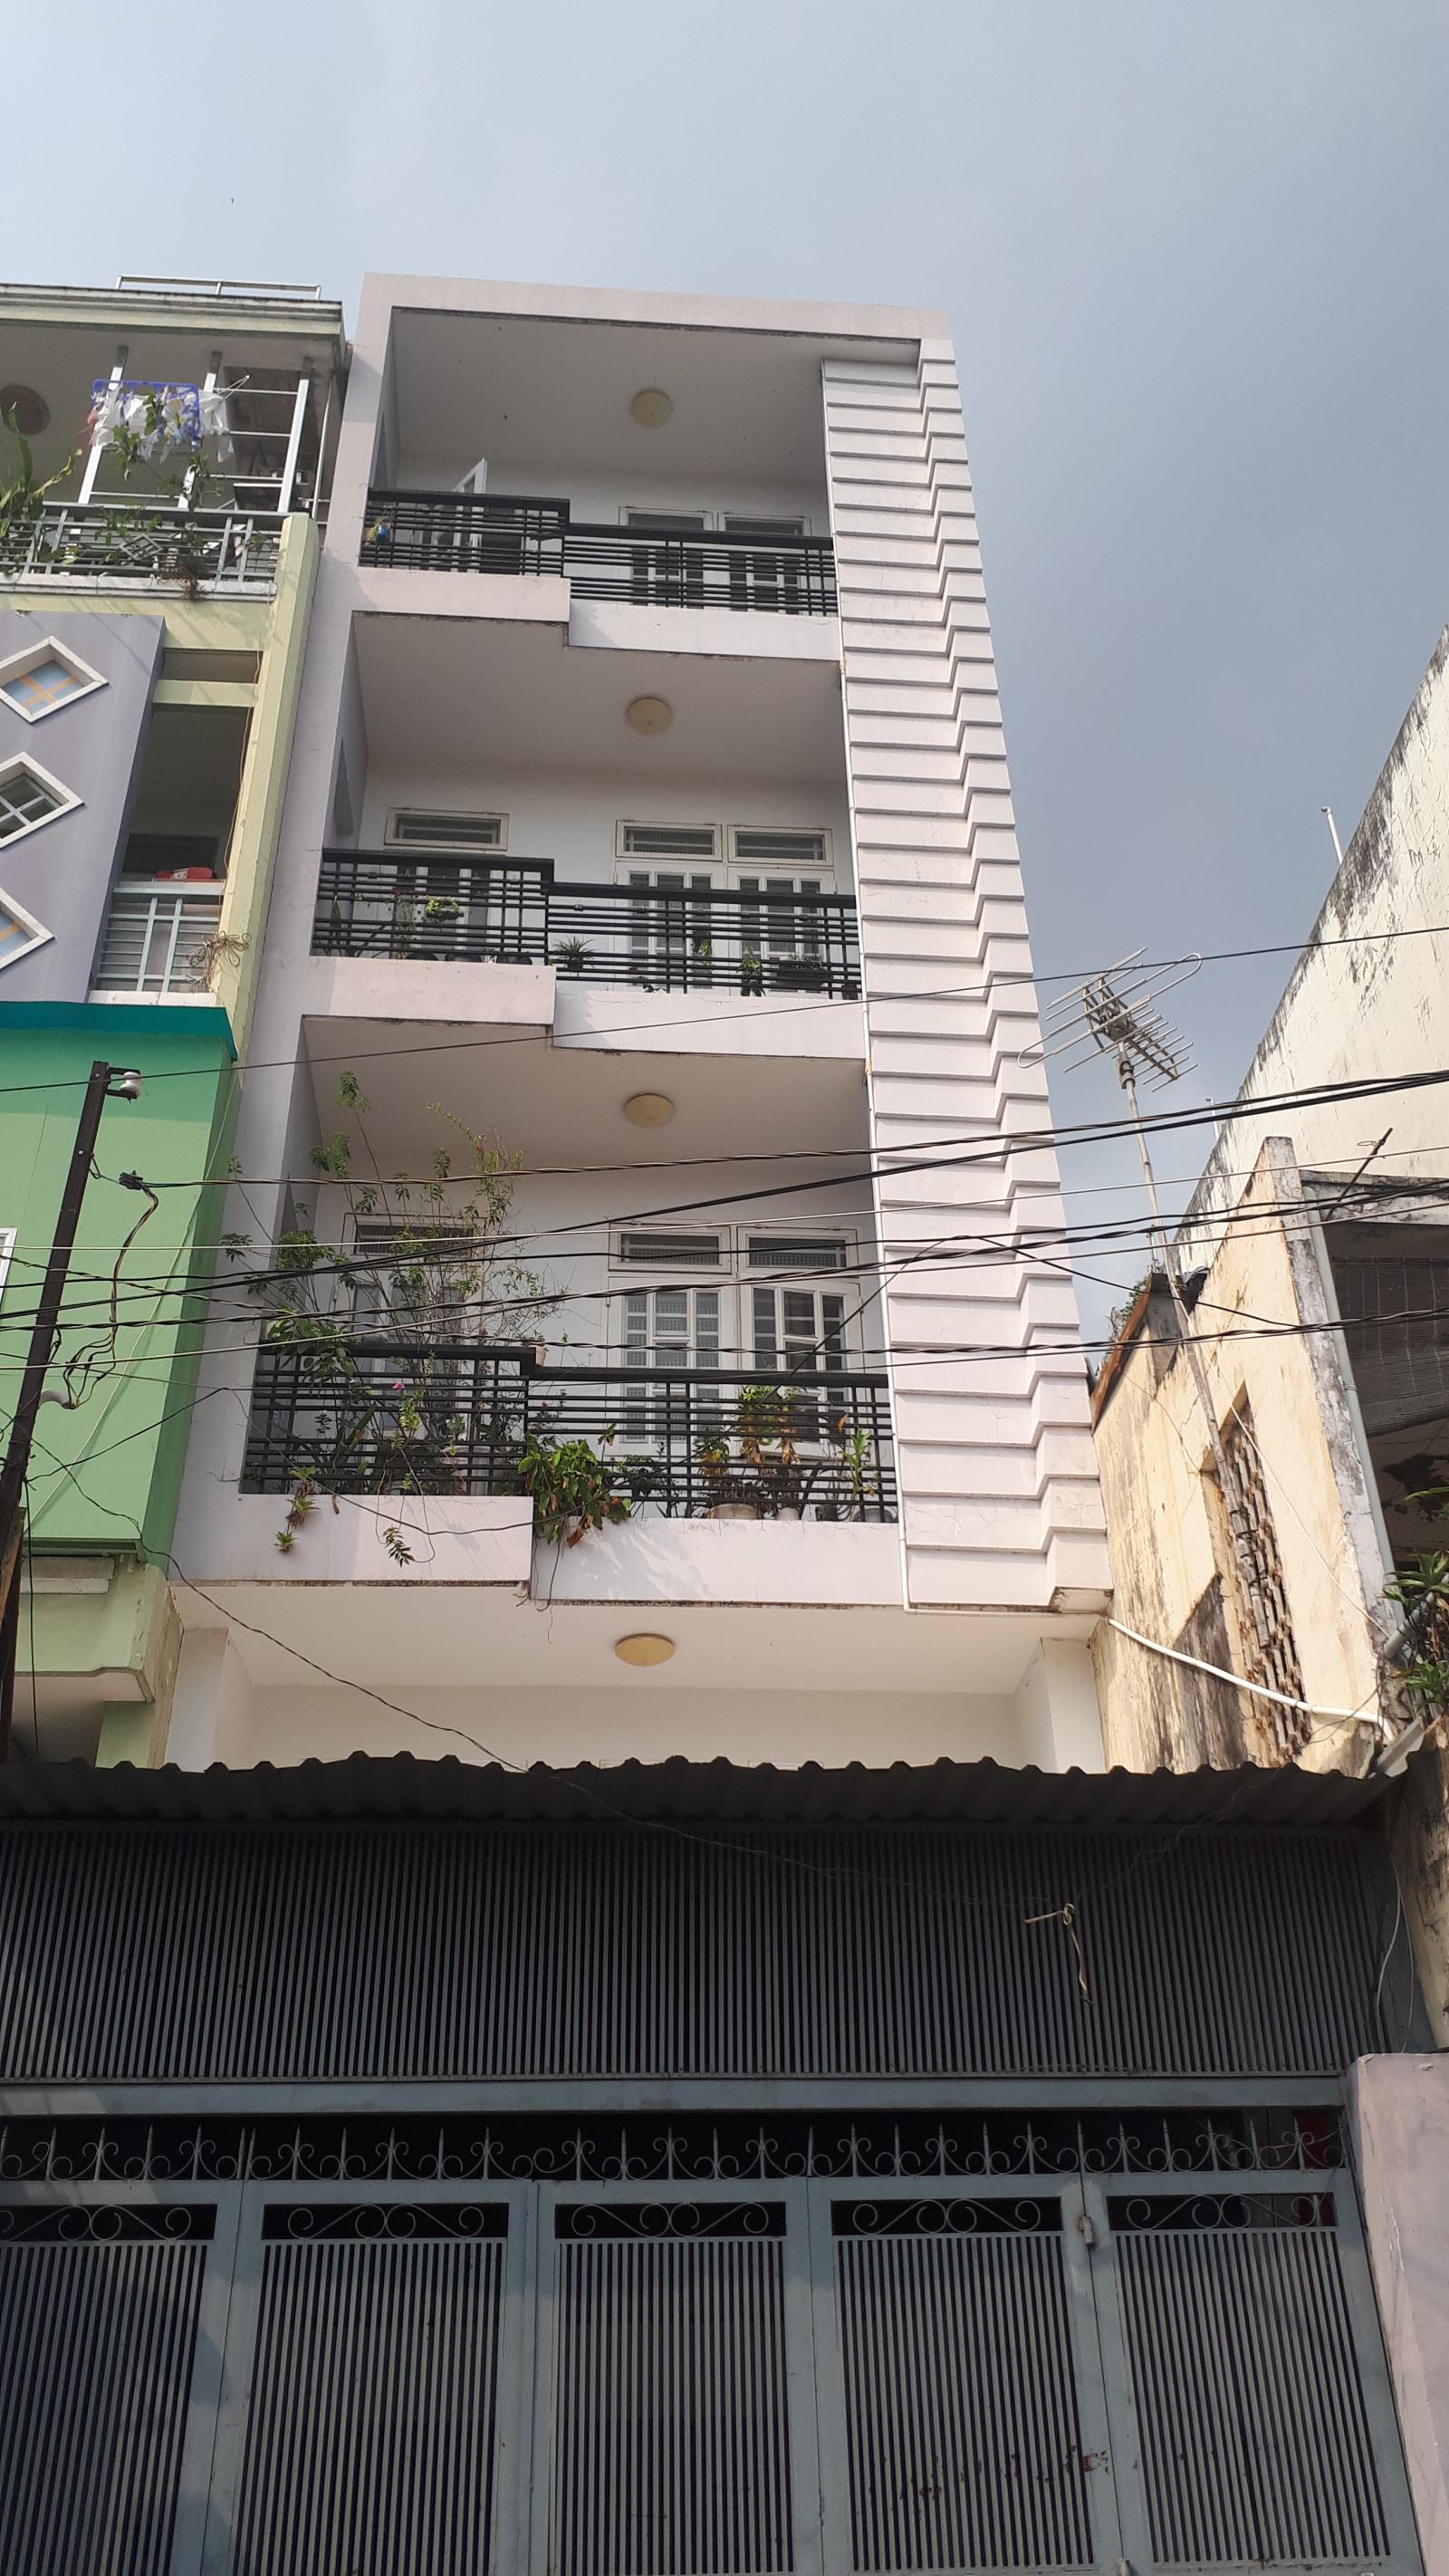 Bán nhà mặt tiền đường Hồng Bàng quận 5, đối diện Thuận Kiều, bề ngang 8m, HĐ thuê 70tr